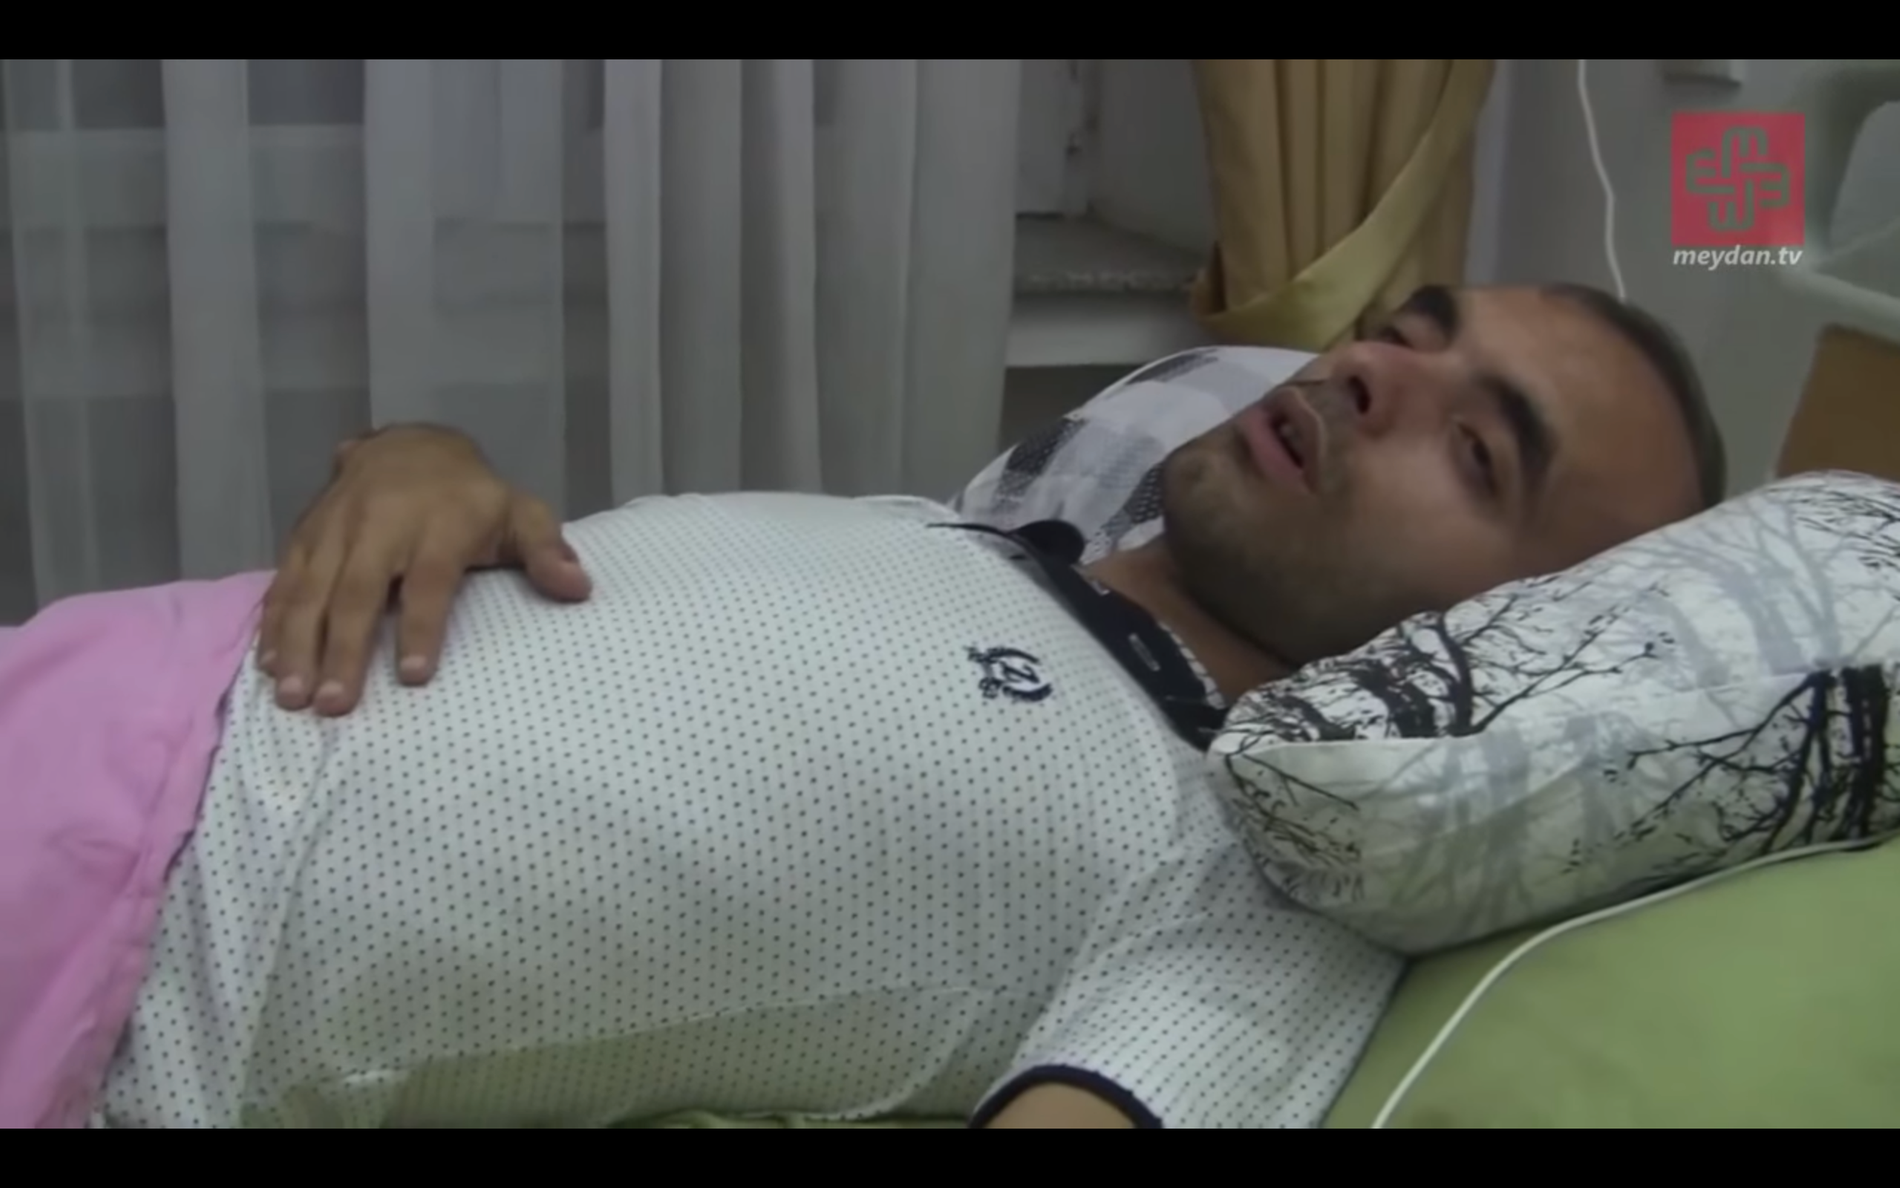 Aliyevs sista intervju. Timmar senare förvärrades hans tillstånd och hans liv gick inte att rädda. Foto: Meydan.tv